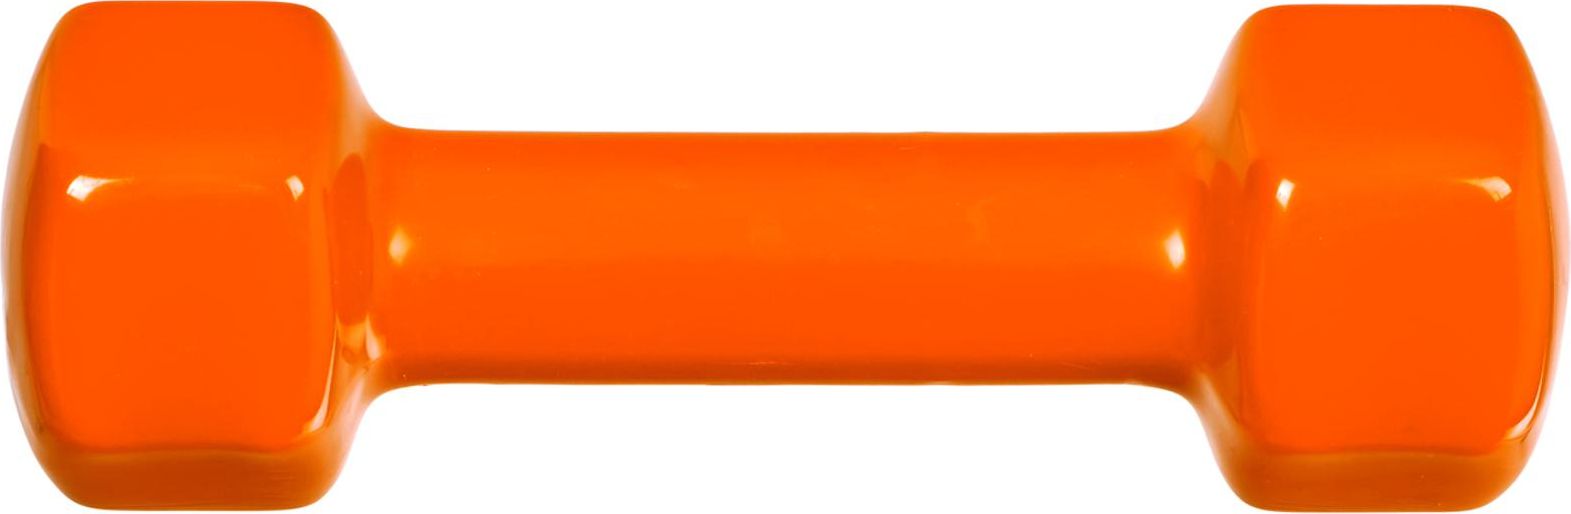 Гантель обрезиненная, оранжевая 1,5 кг